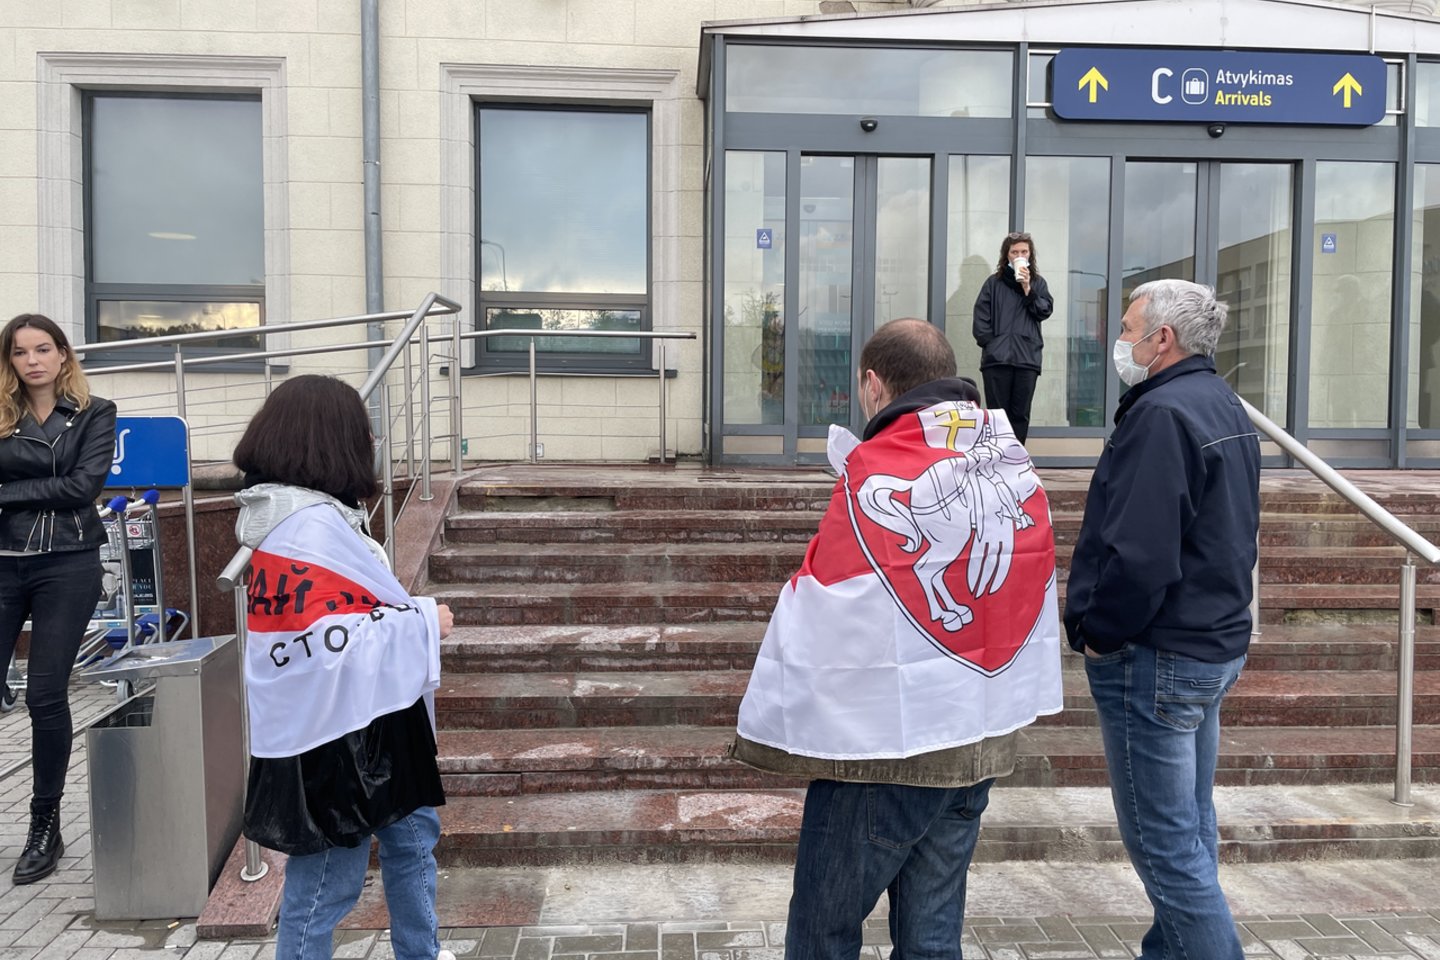 Vilniaus oro uoste Baltarusijos opozicijos tinklaraštininko ir aktyvisto R.Pratasevičiaus šalininkai su plakatais laukia „Ryanair“ lėktuvo su keleiviais ir pargabentu aktyvistu. <br> V.Ščiavinsko nuotr.